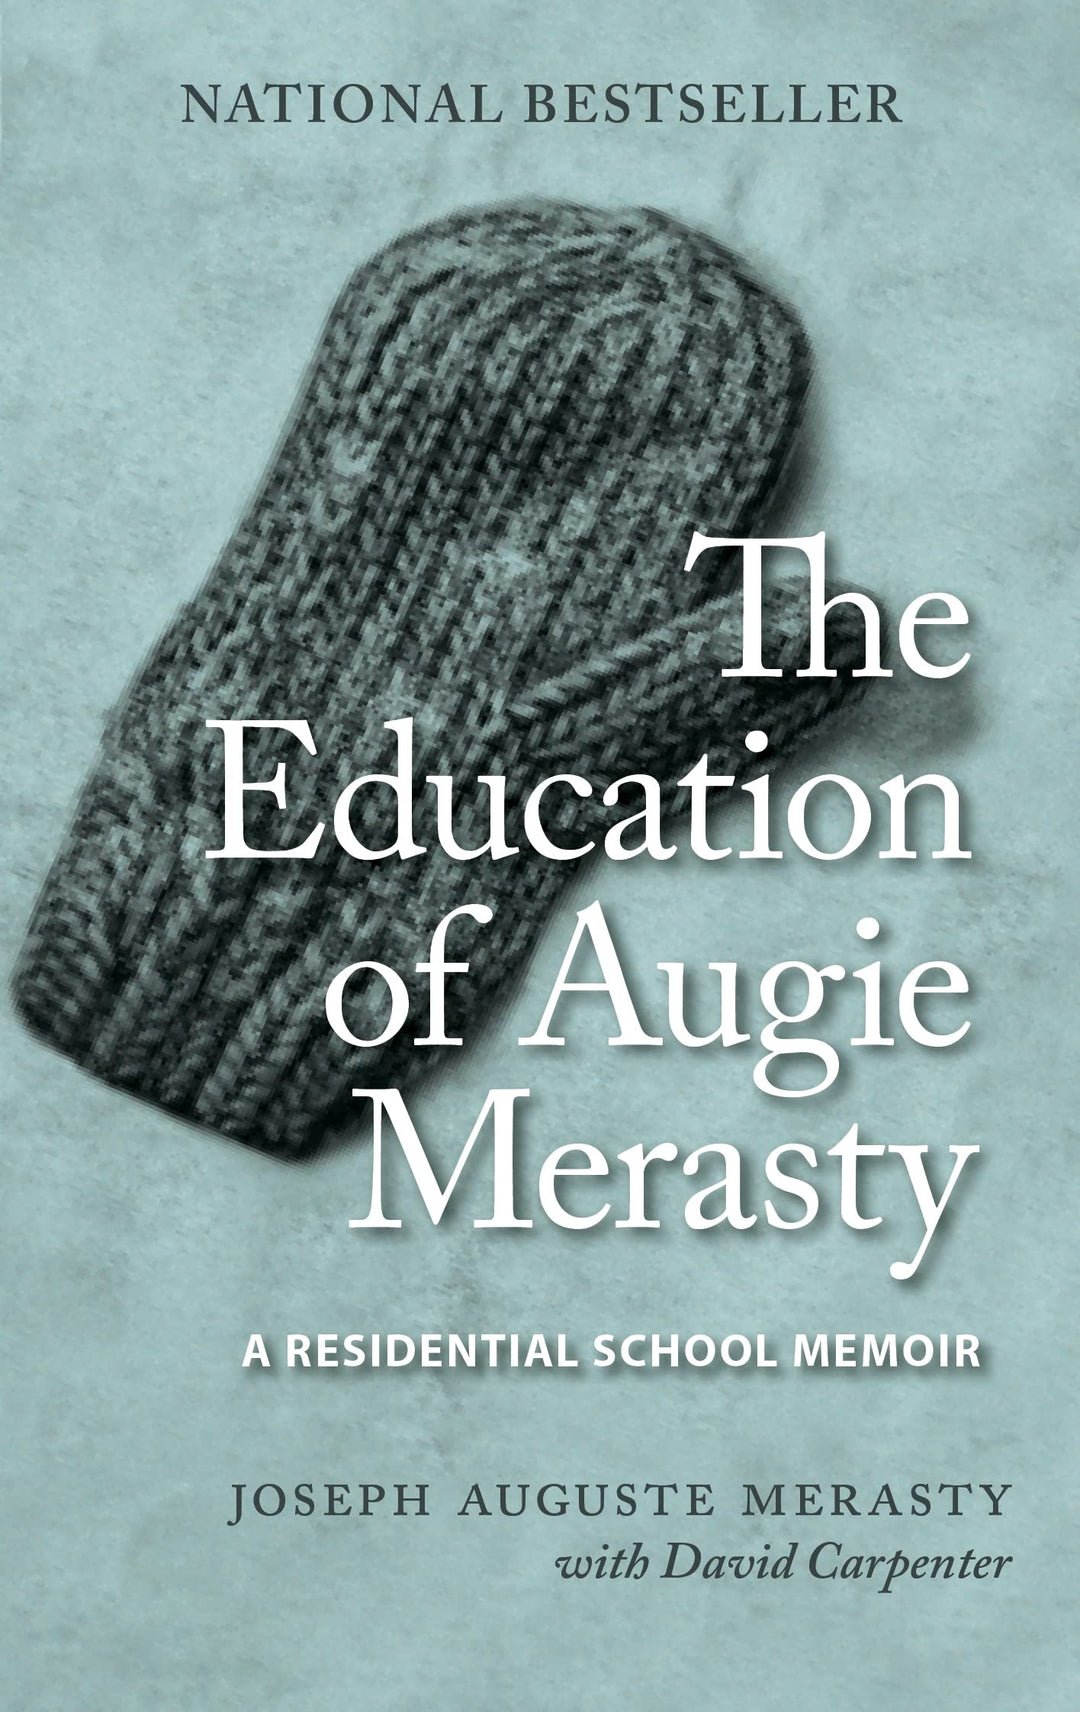 The Education of Augie Merasty: A Residential School Memoir by Joseph Auguste Merasty